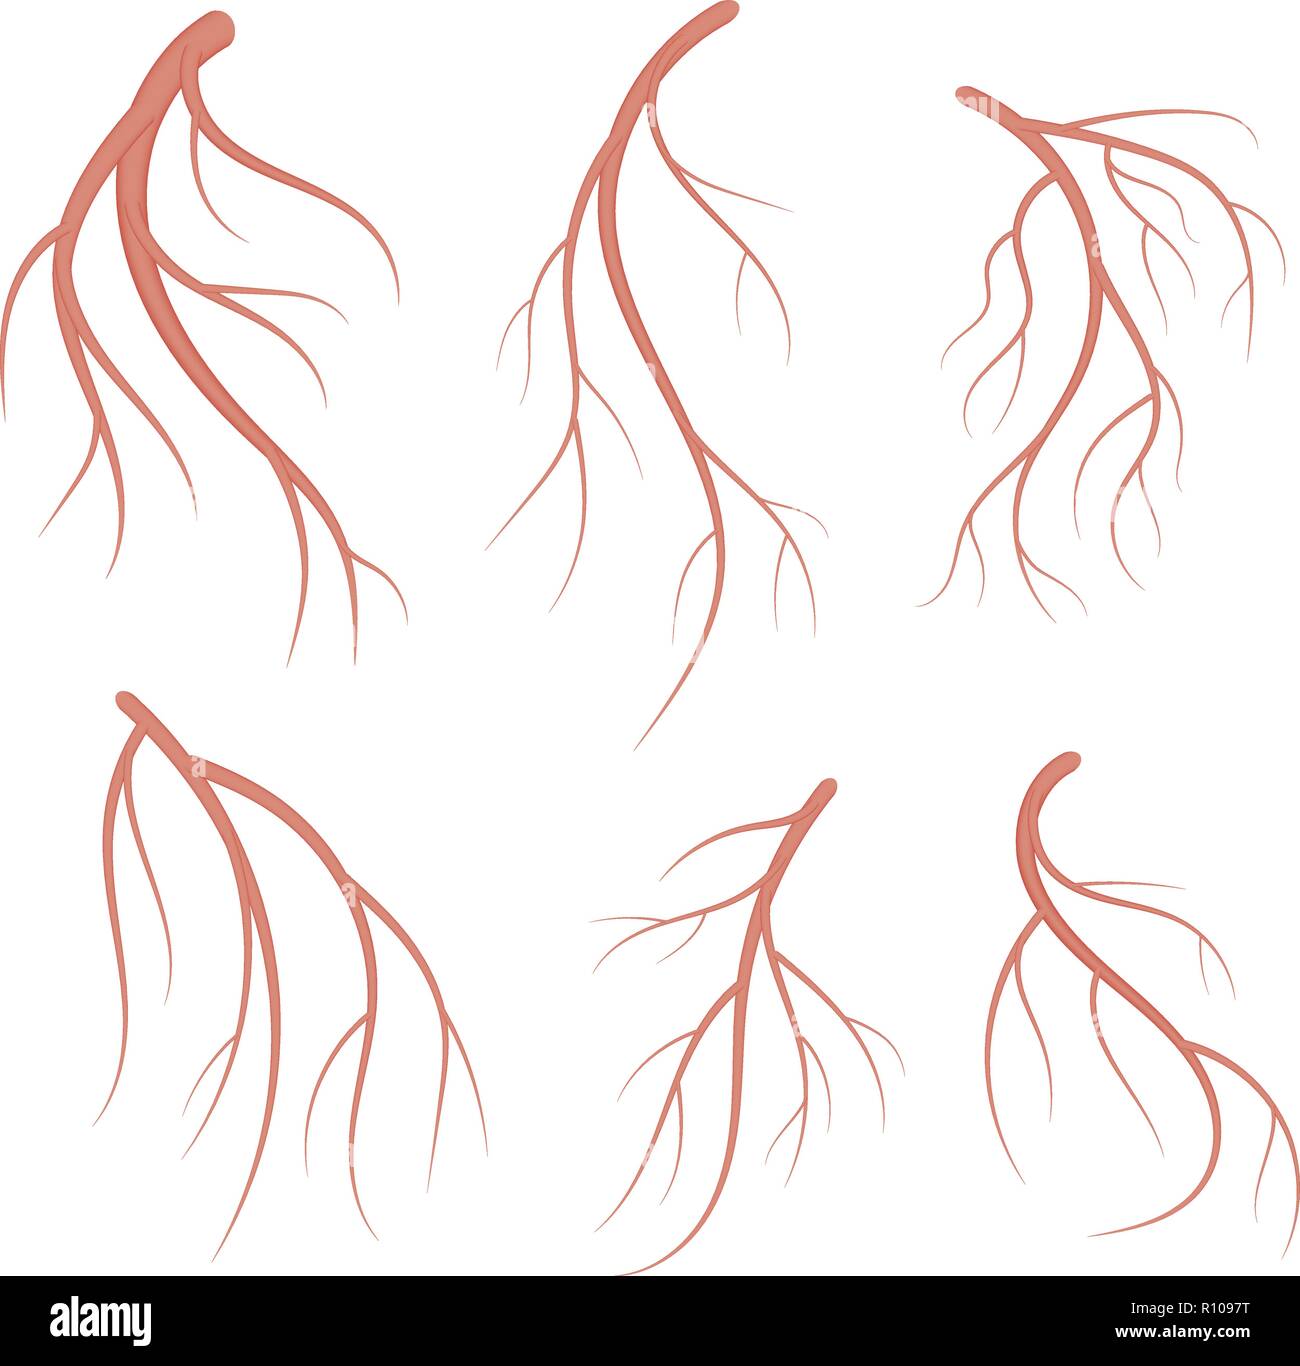 Les veines, vaisseaux sanguins rouges ensemble. Vector illustration médicale réaliste isolé sur fond blanc Illustration de Vecteur